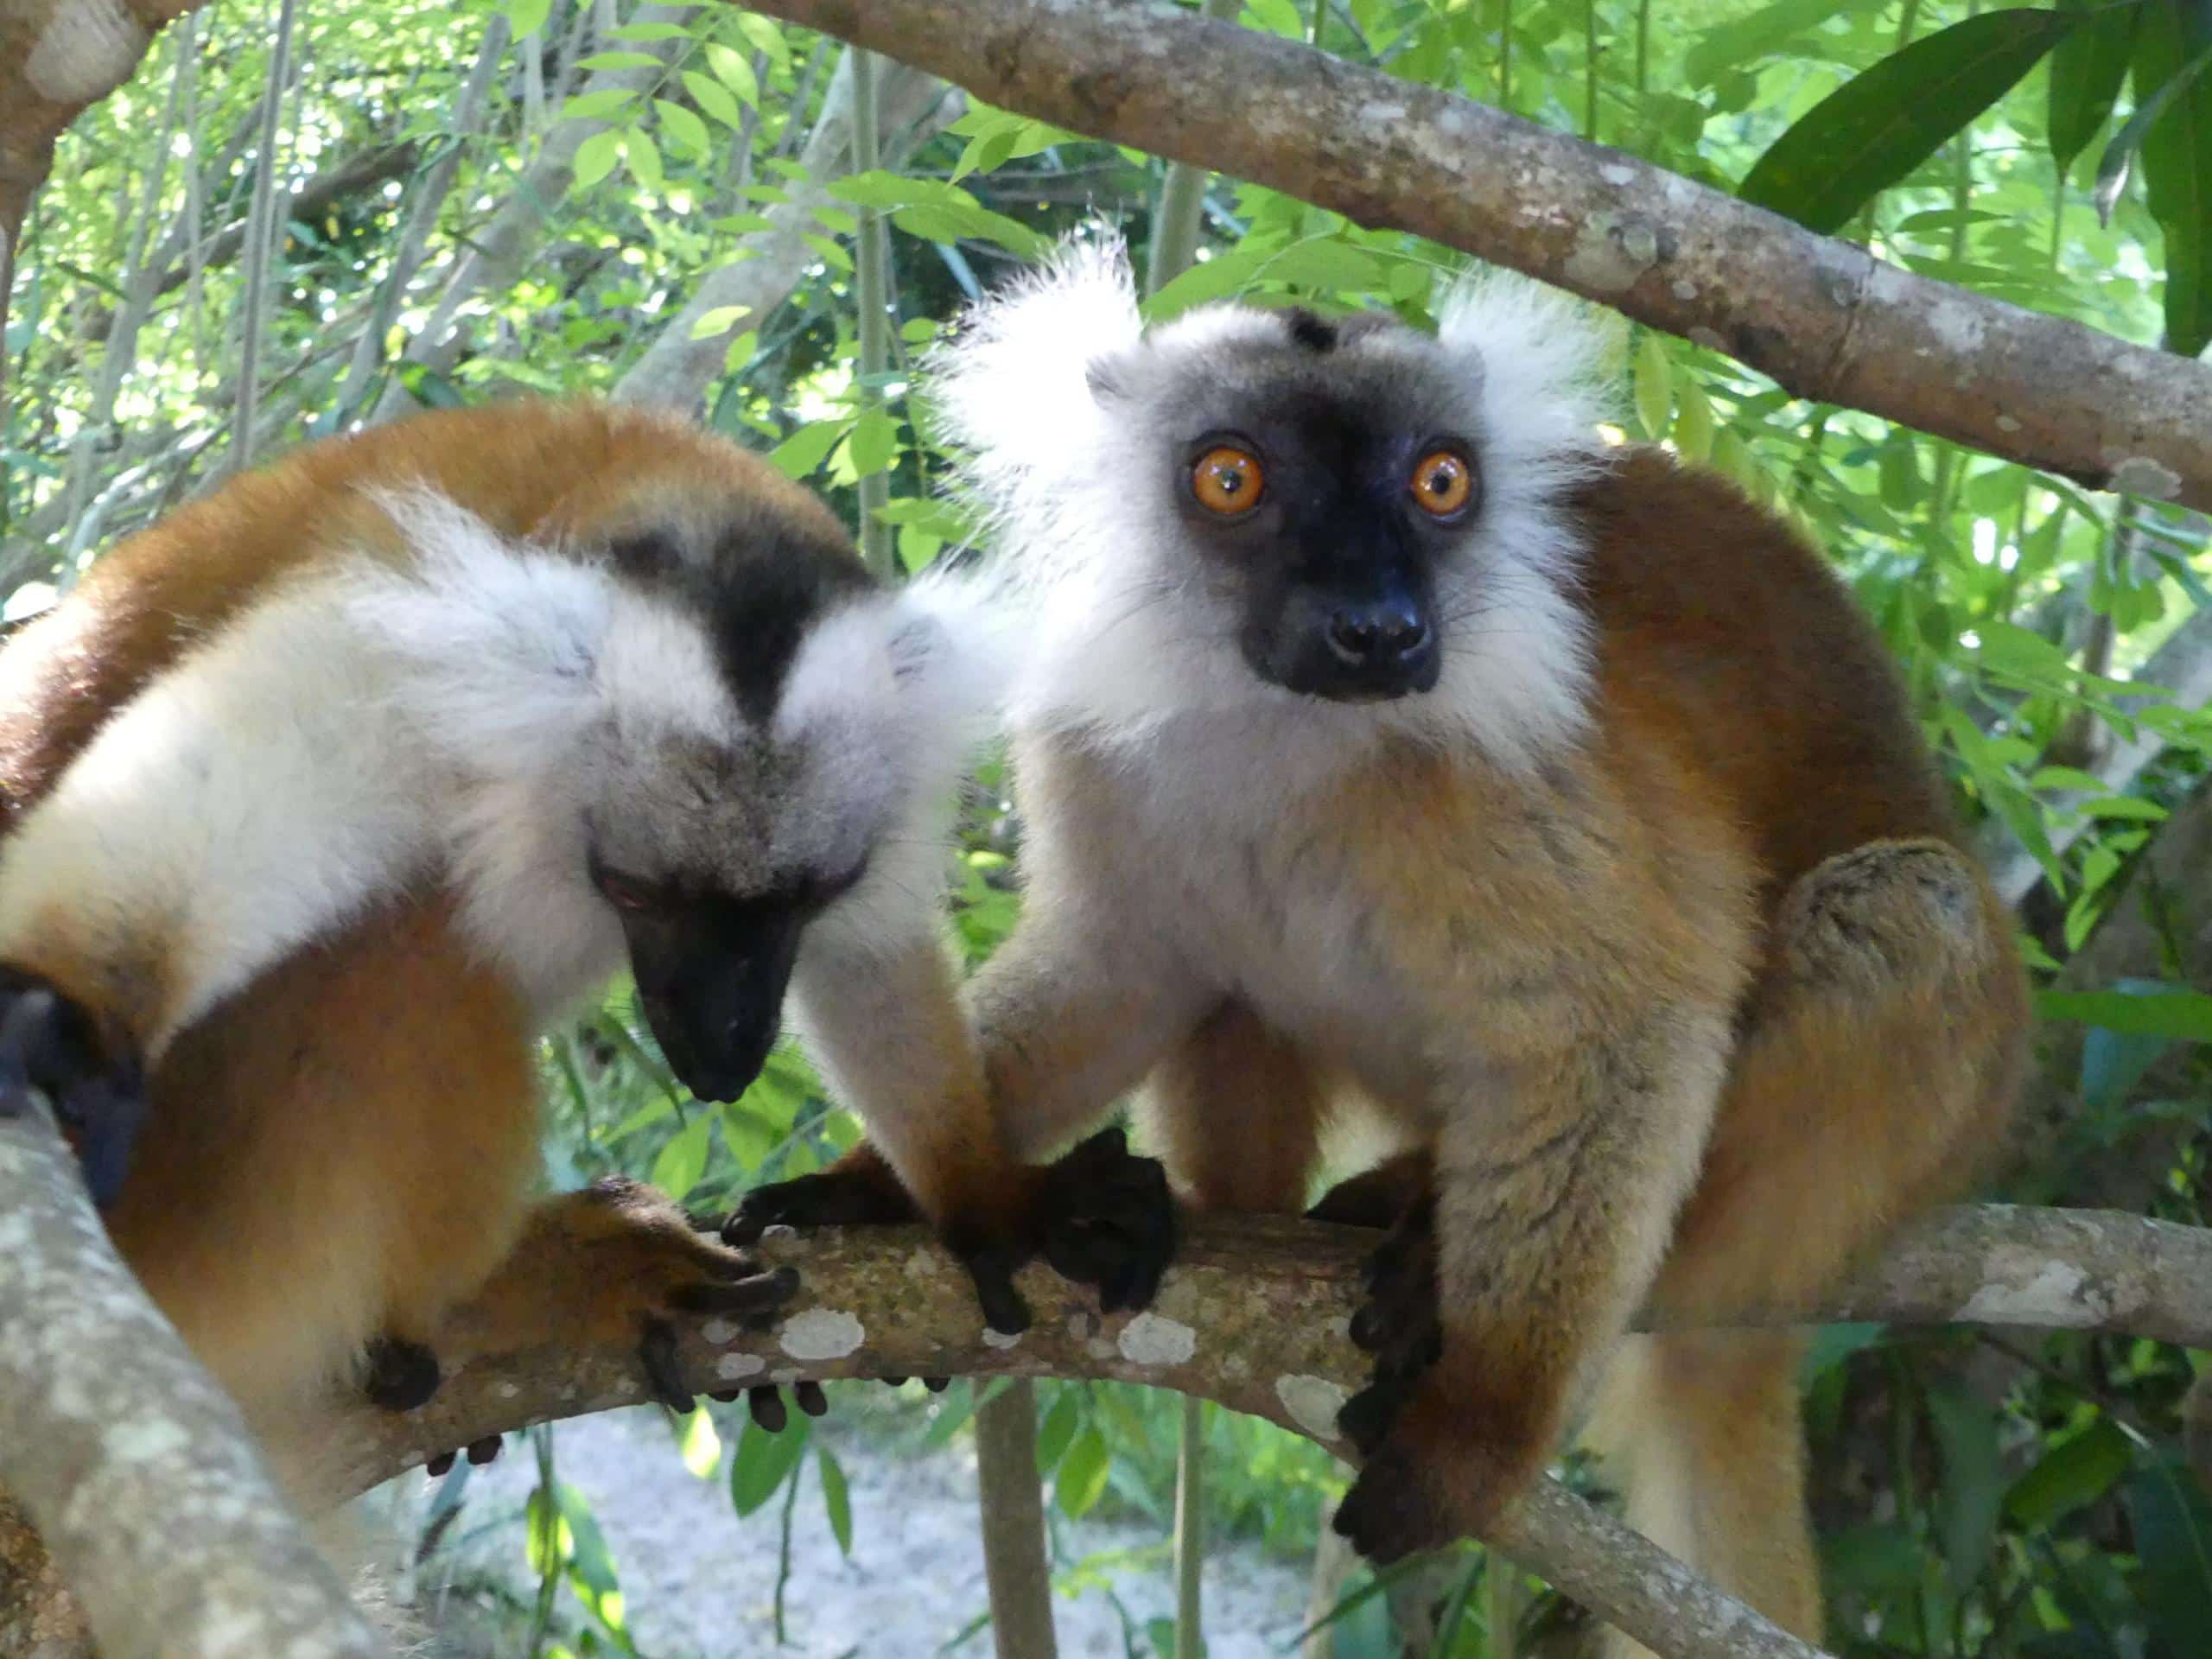 Macaco lemur in Palmarium